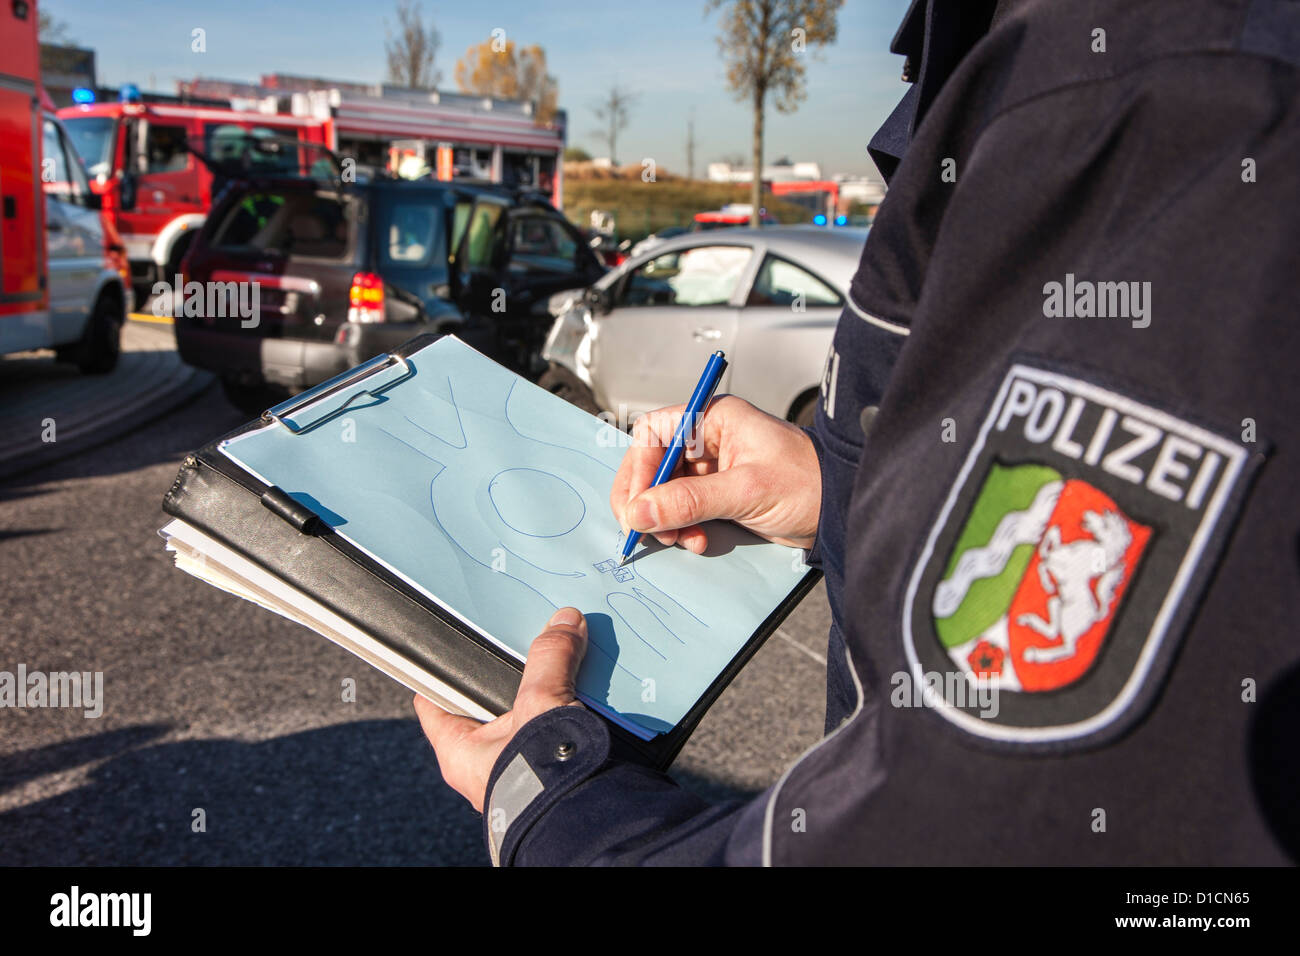 La polizia blocca documenti e testimonianze dopo un incidente d'auto. Foto Stock